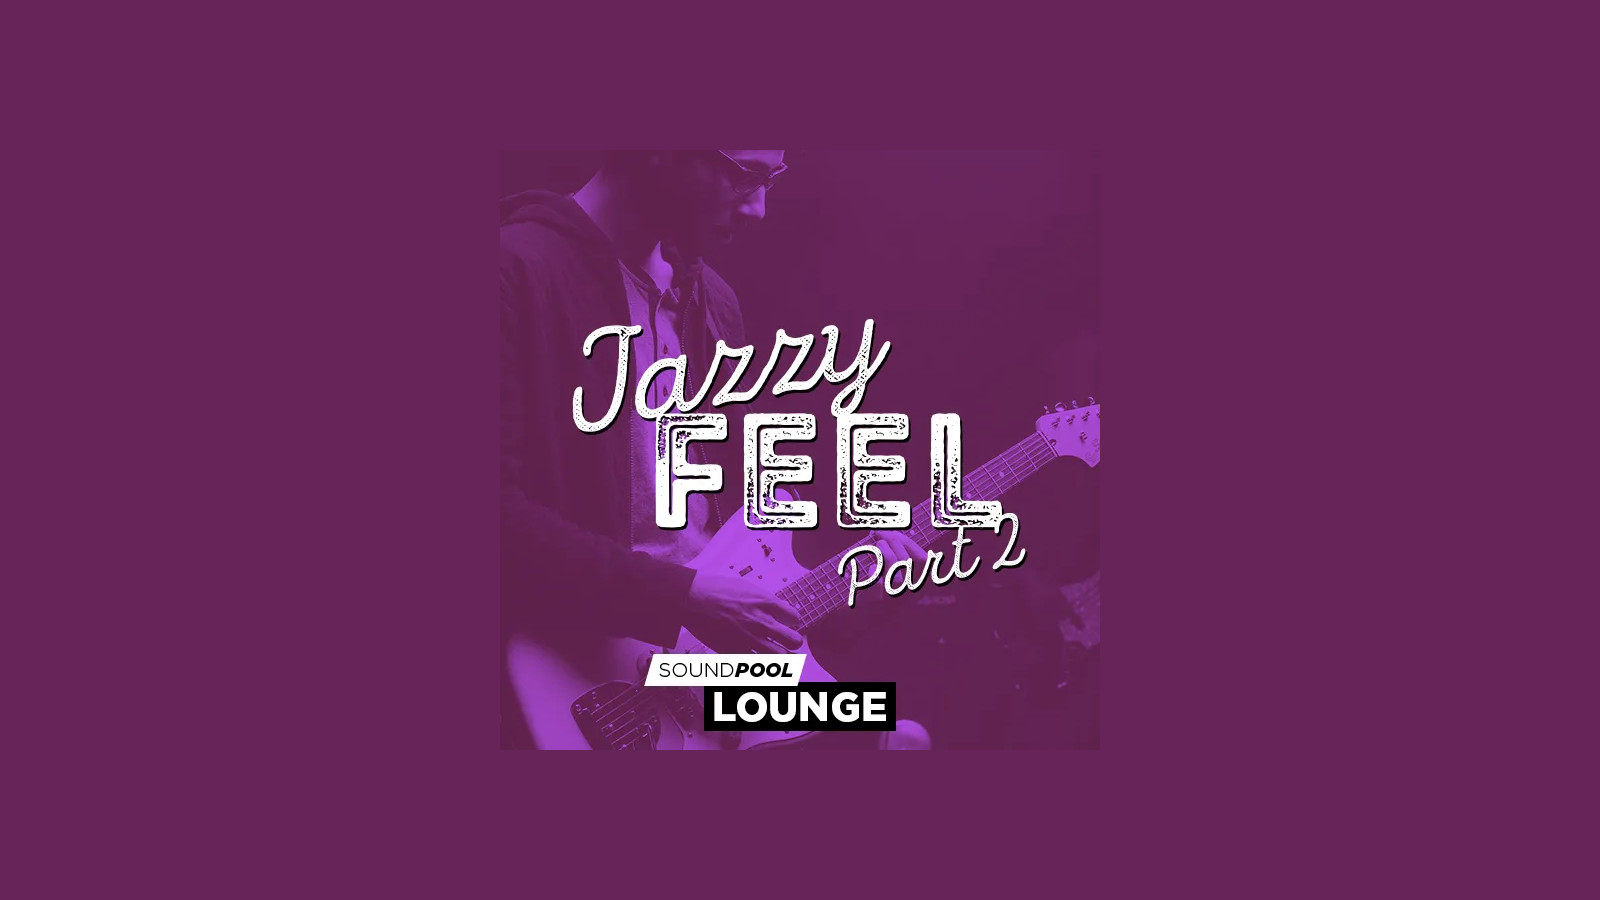 MAGIX Soundpool Jazzy Feel Part 2 ProducerPlanet CD Key, $5.65